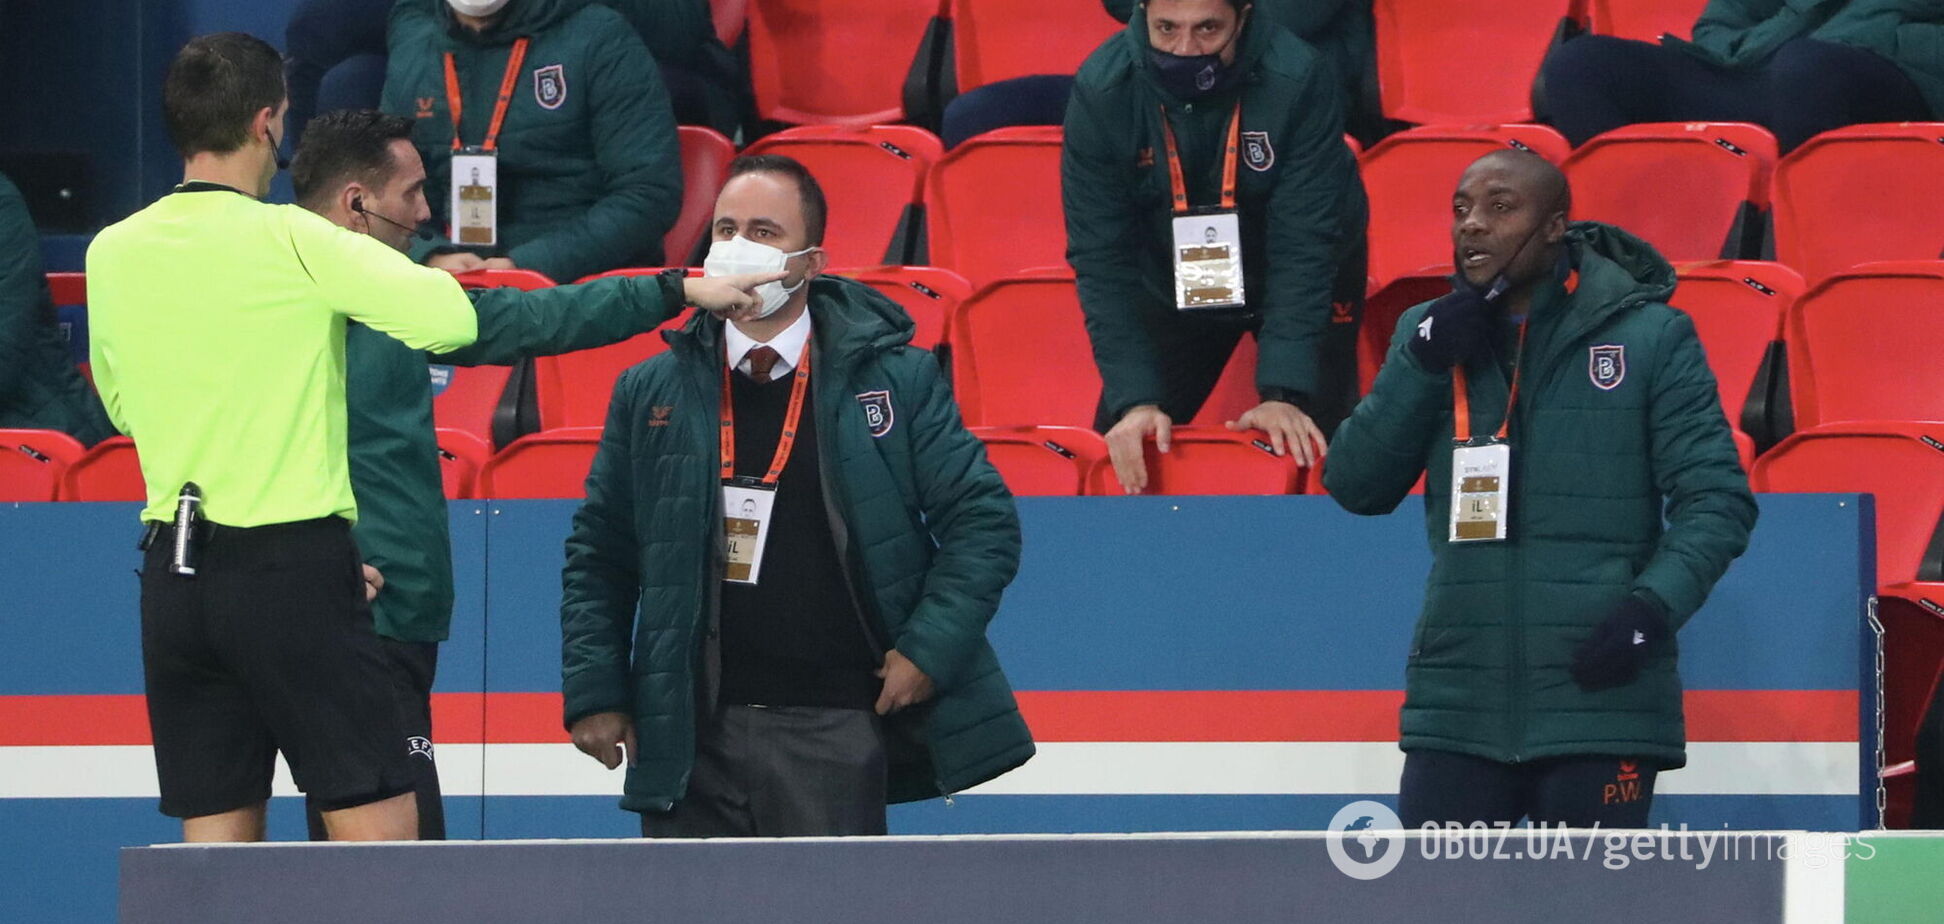 Момент с удалением Пьера Вебо в матче ПСЖ - 'Истанбул'